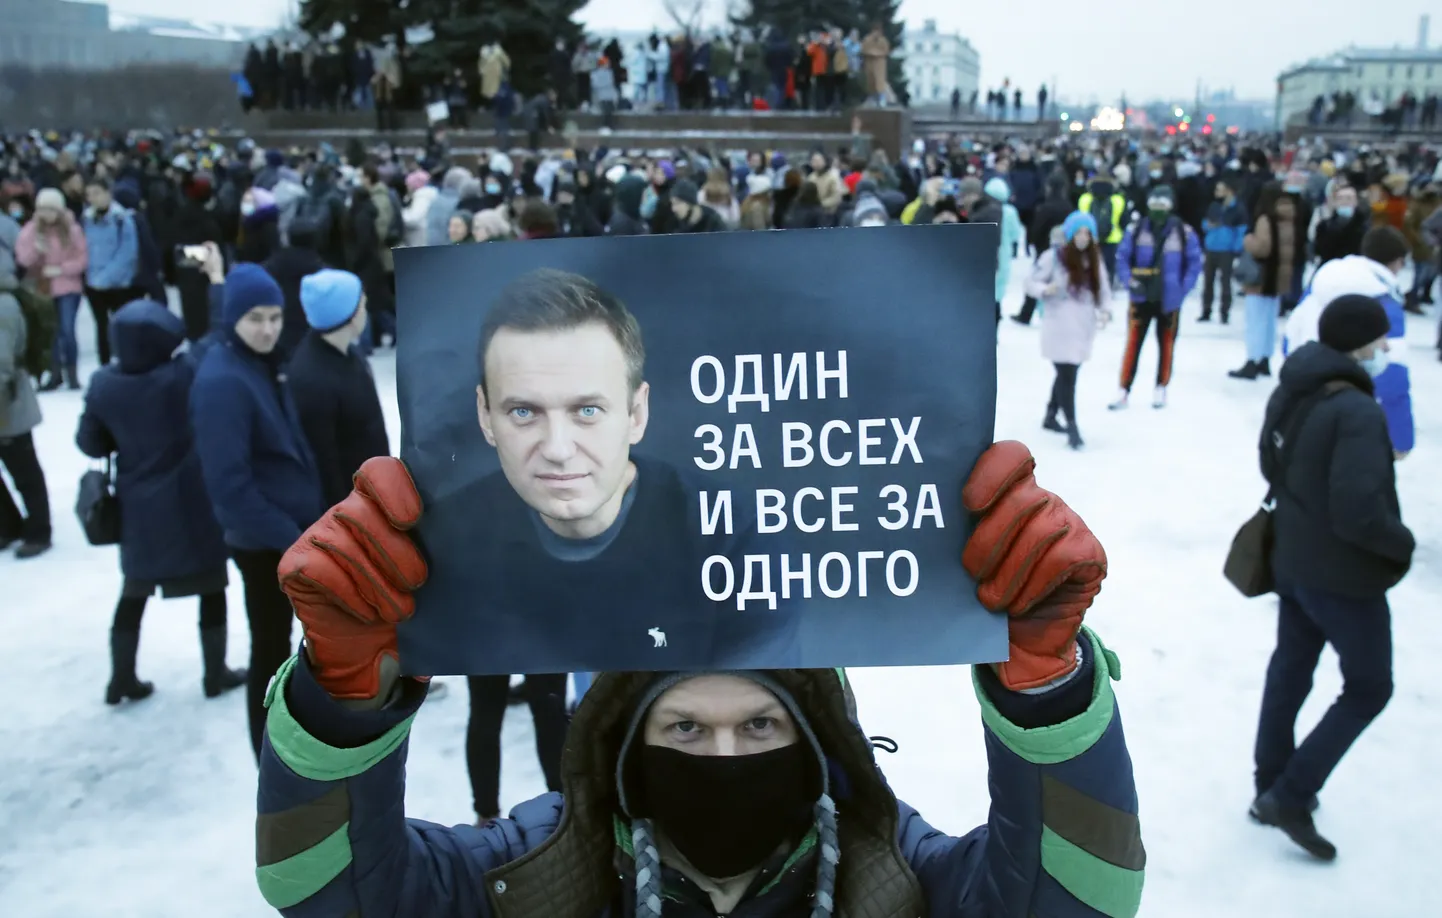 Protests Sanktpēterburga, Krievija. ''Viens par visiem un visi par vienu.''